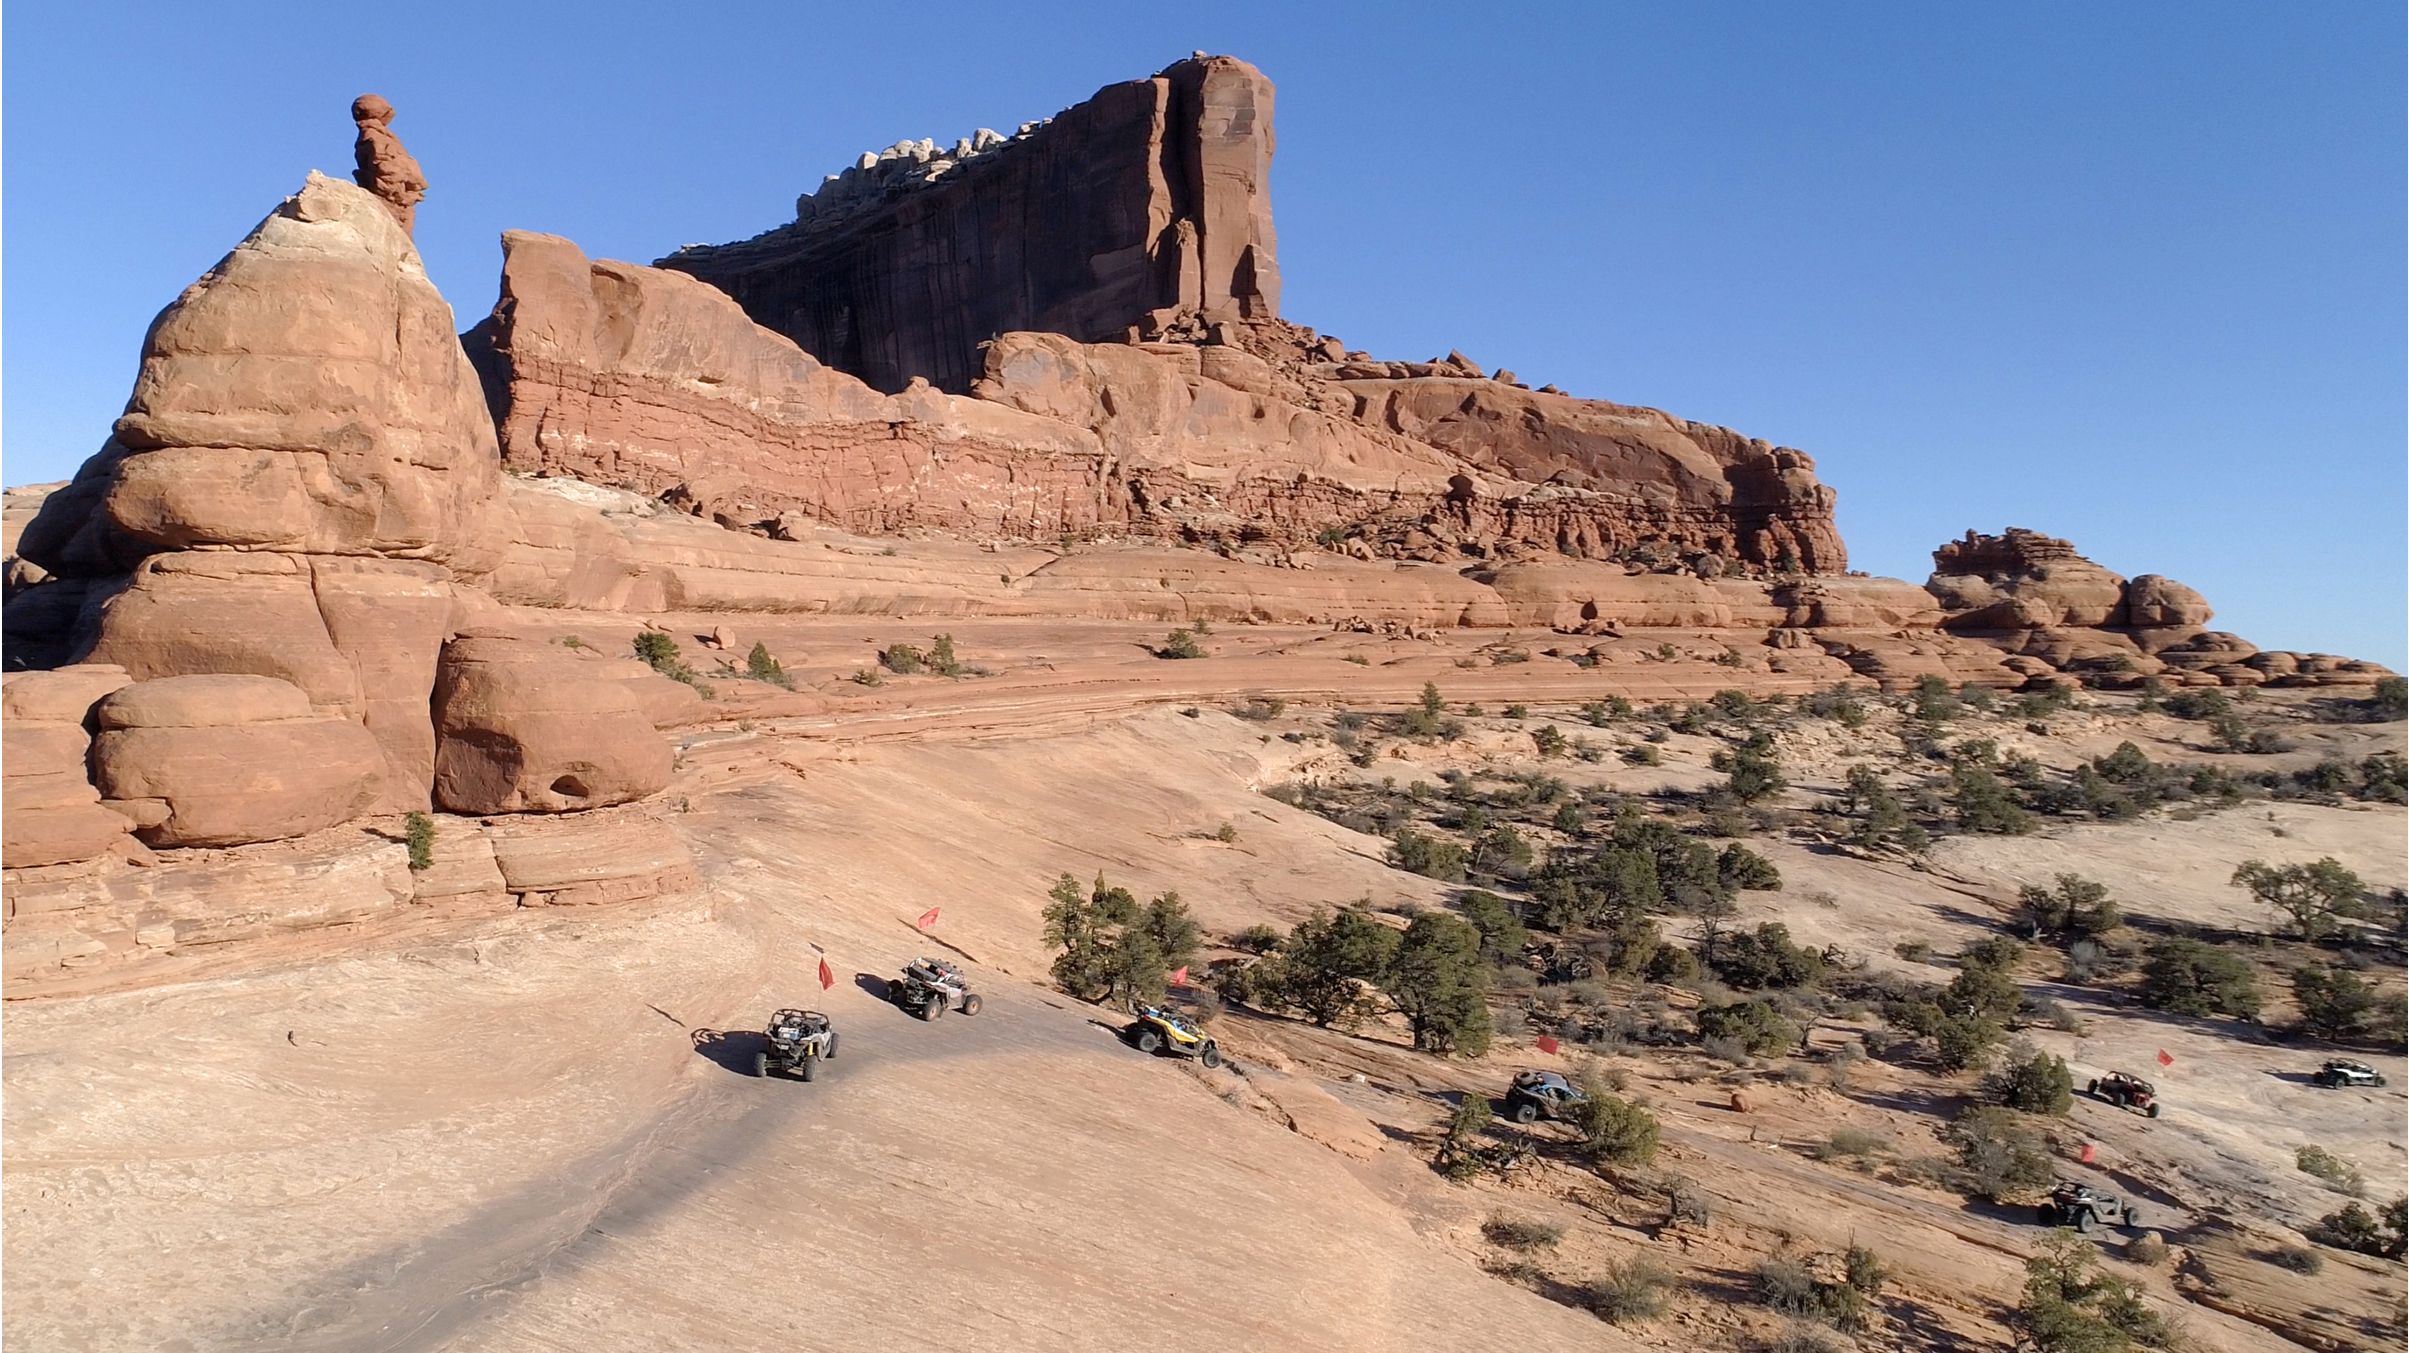 7 vehículos Can-Am Off-Road en el desierto